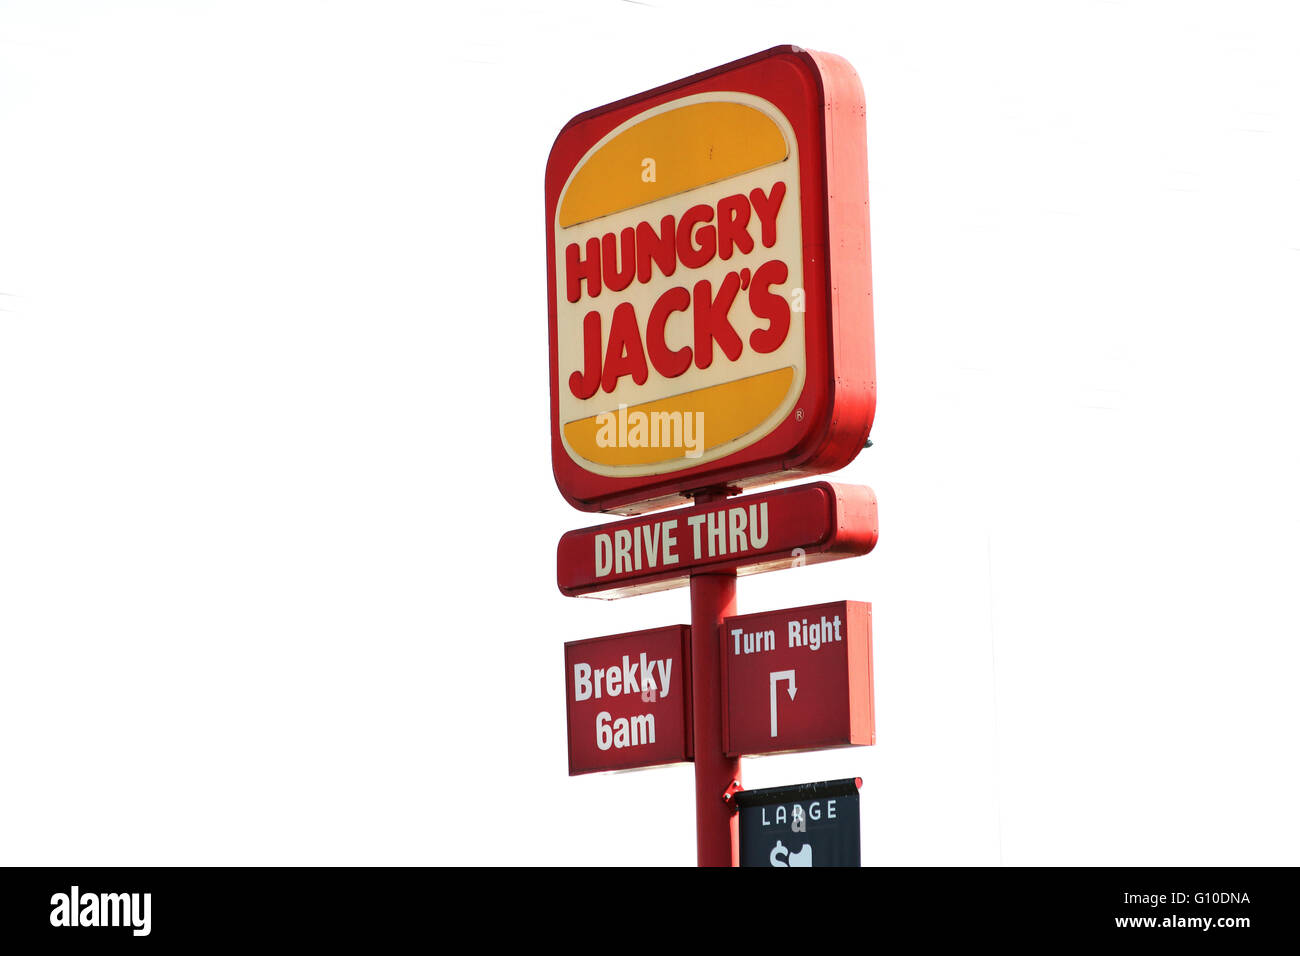 Fame Jack's Burger King drive thru grande segno contro uno sfondo bianco Foto Stock